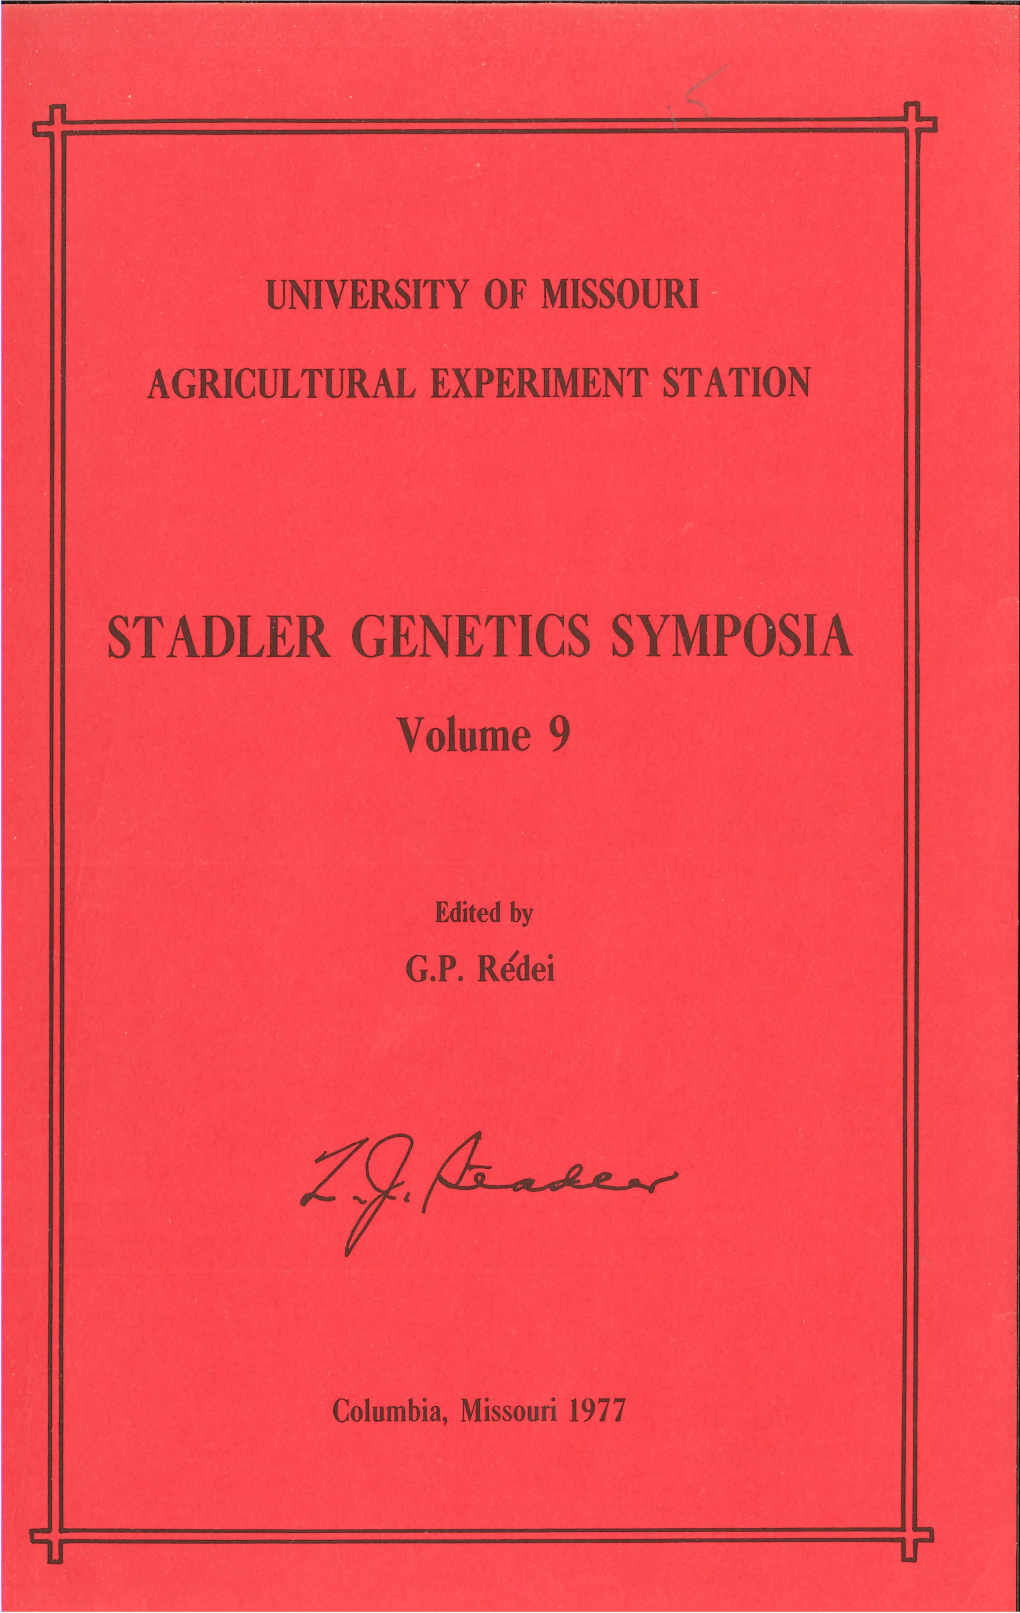 ST ADLER GENETICS SYMPOSIA Volume 9